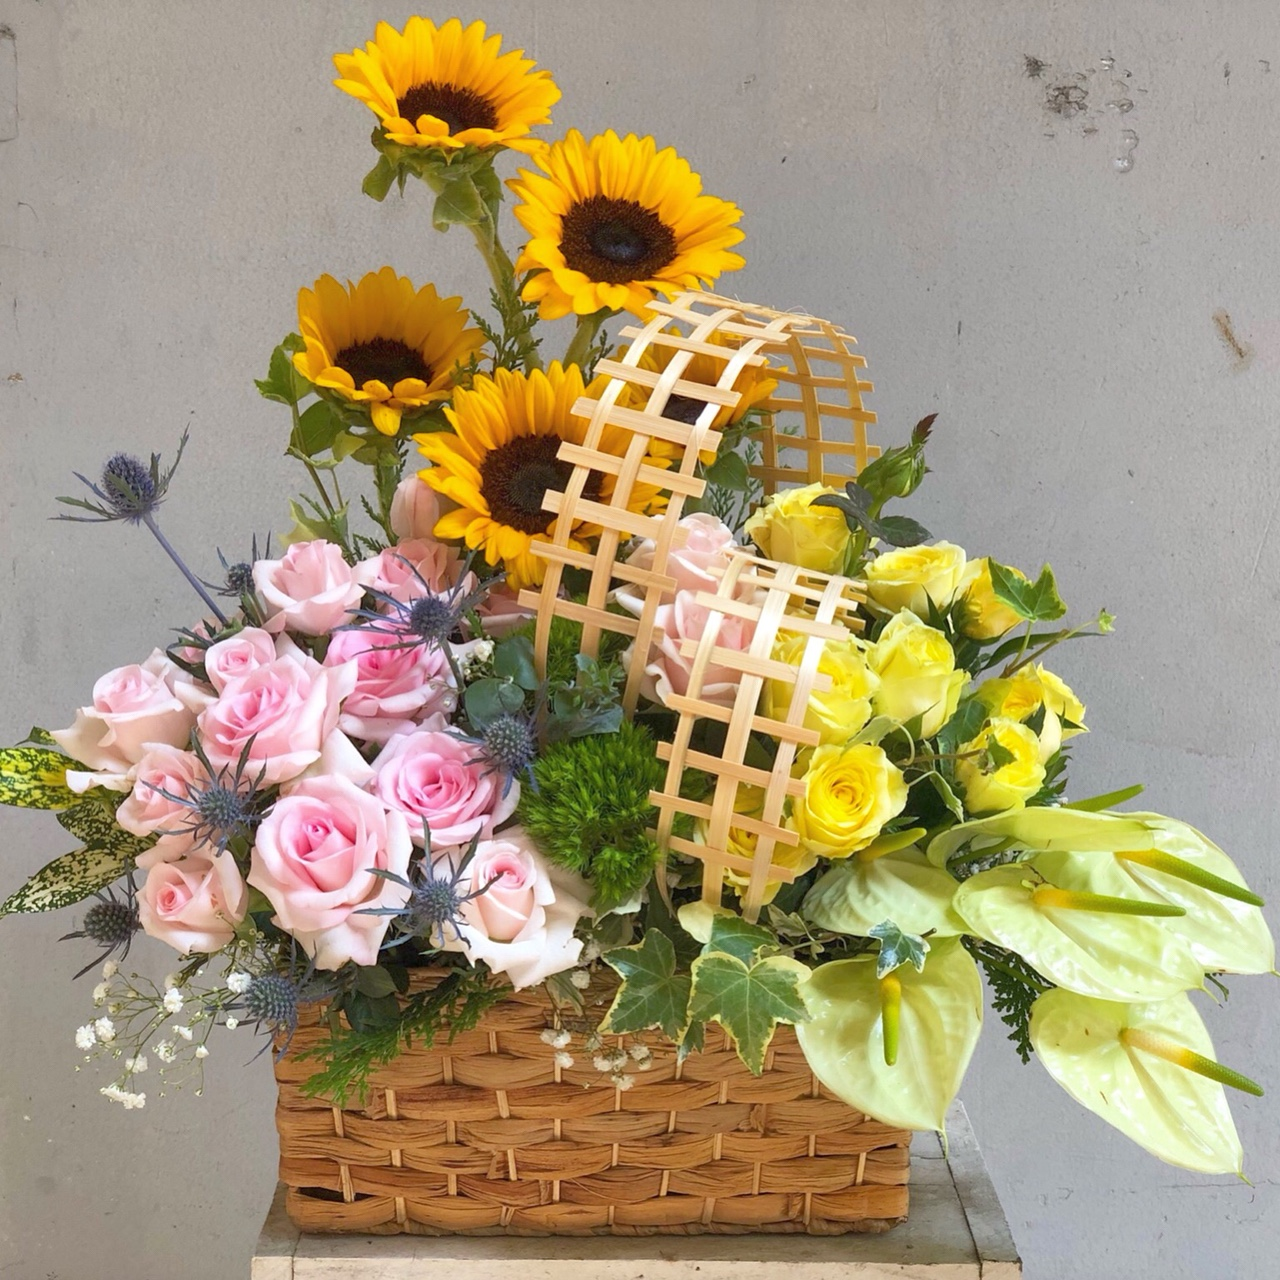 Shop hoa tươi tại Shop Hoa Vip – Địa chỉ vàng cho mọi khách hàng yêu hoa